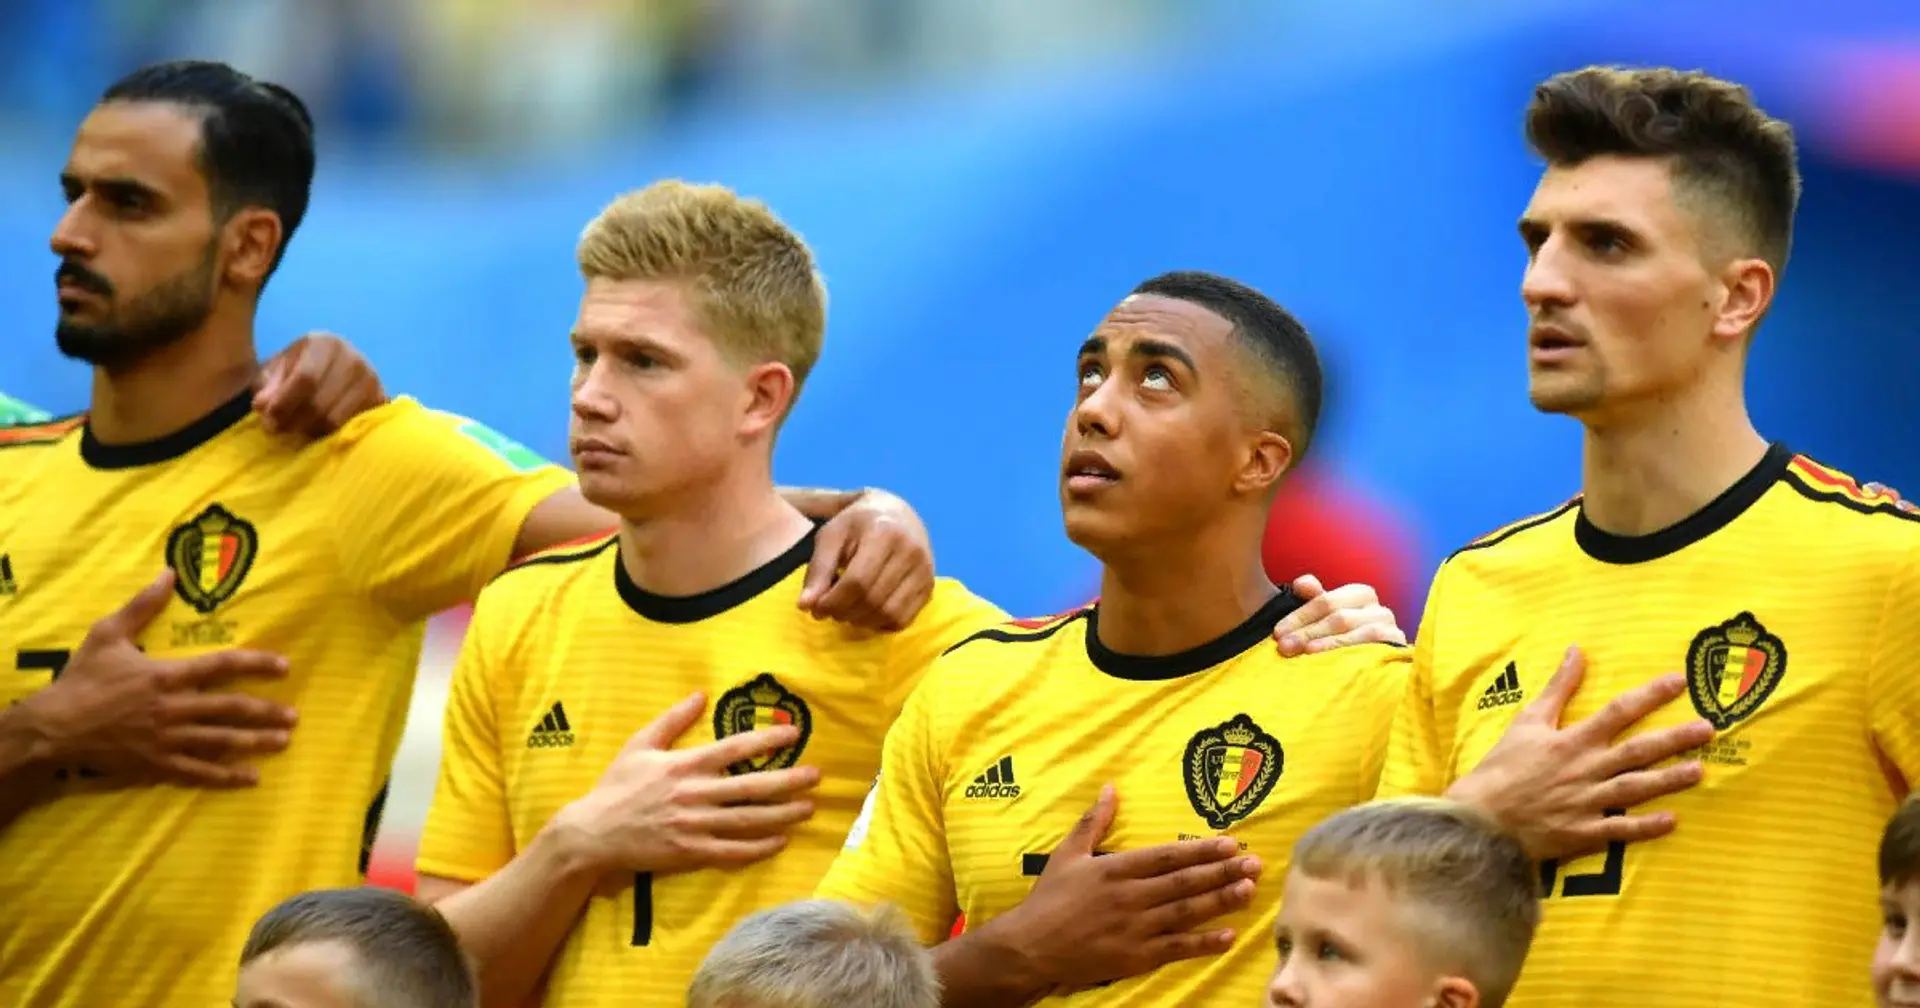 Thomas Meunier mag nicht die Nations League - und spielt nicht für Belgien